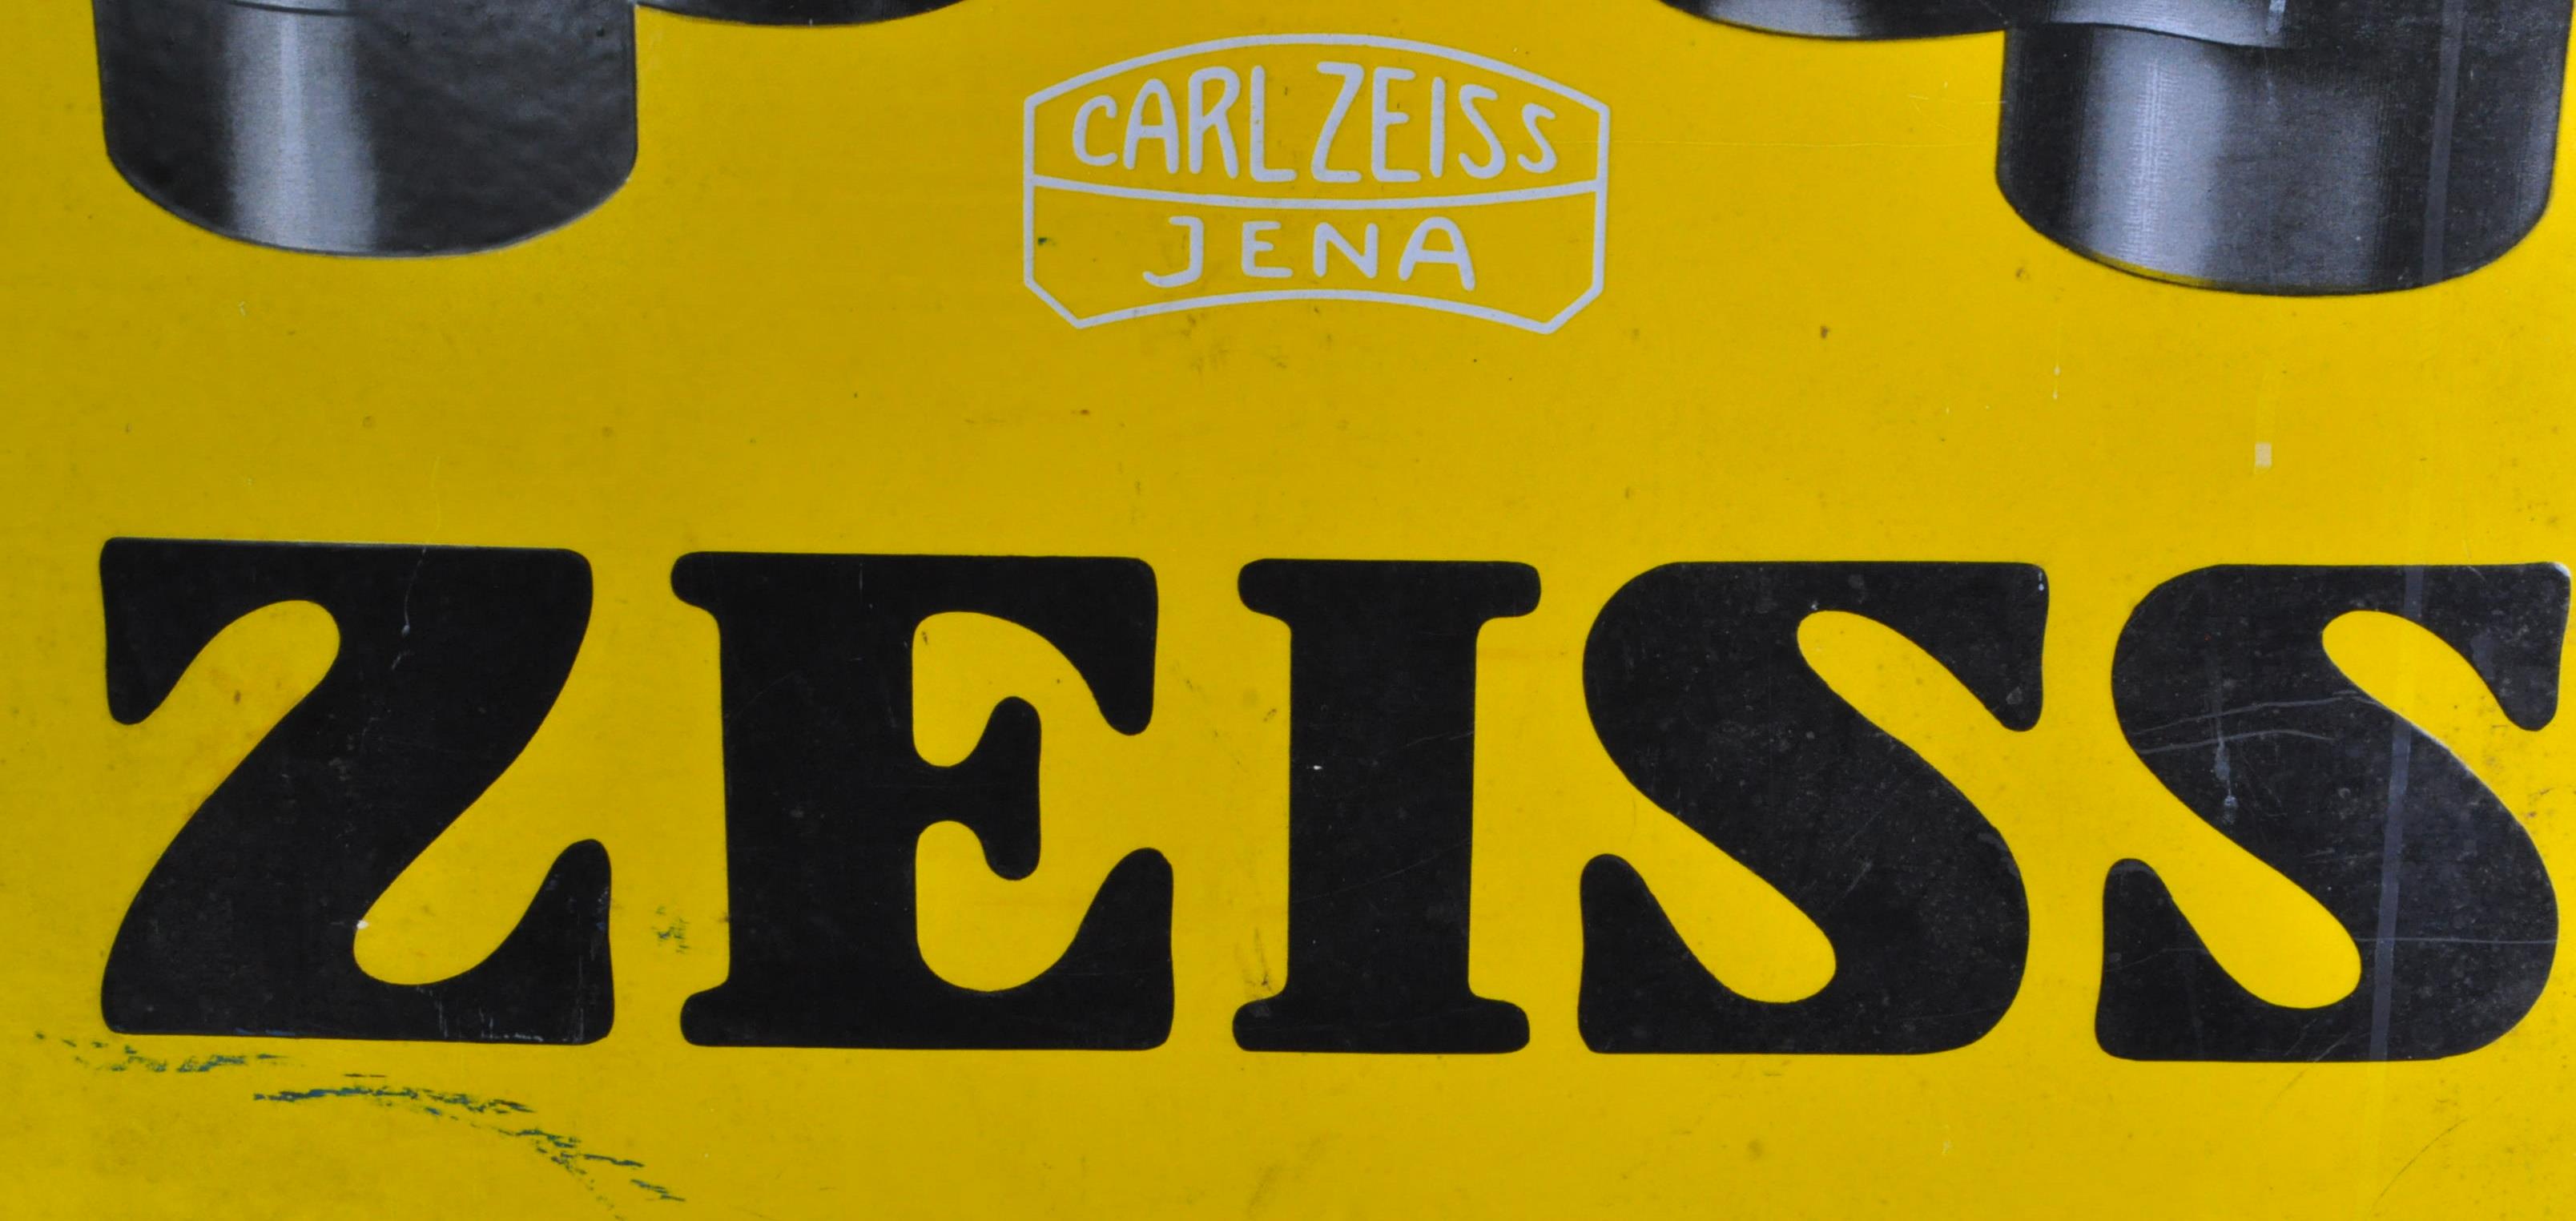 CARL ZEISS - ZEISS - ORIGINAL C1930S ENAMEL ADVERTISING SIGN - Image 3 of 6